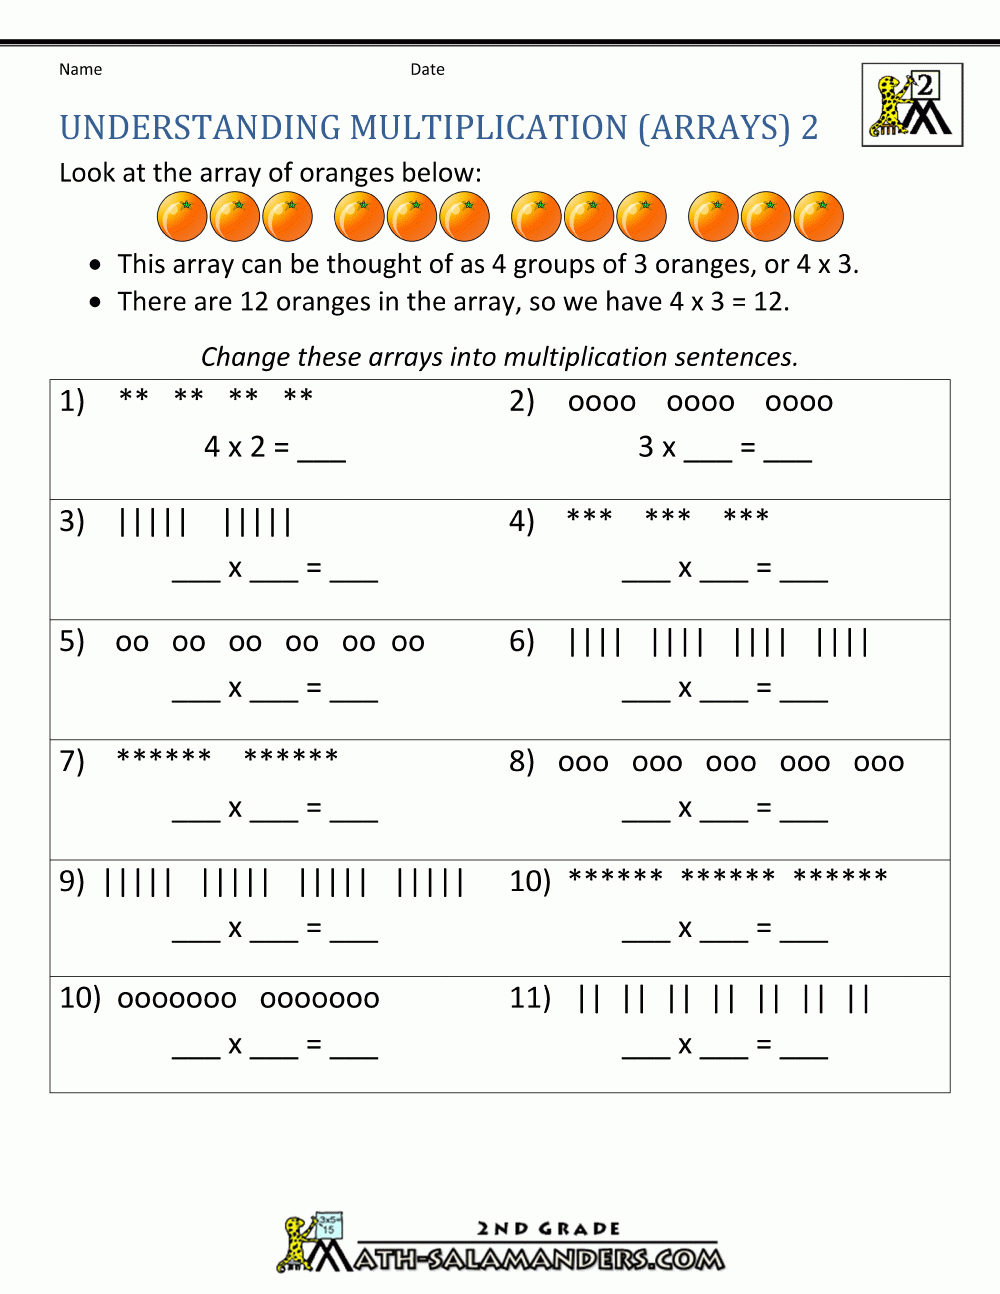 Beginning Multiplication Worksheets regarding Worksheets On Multiplication For Grade 2